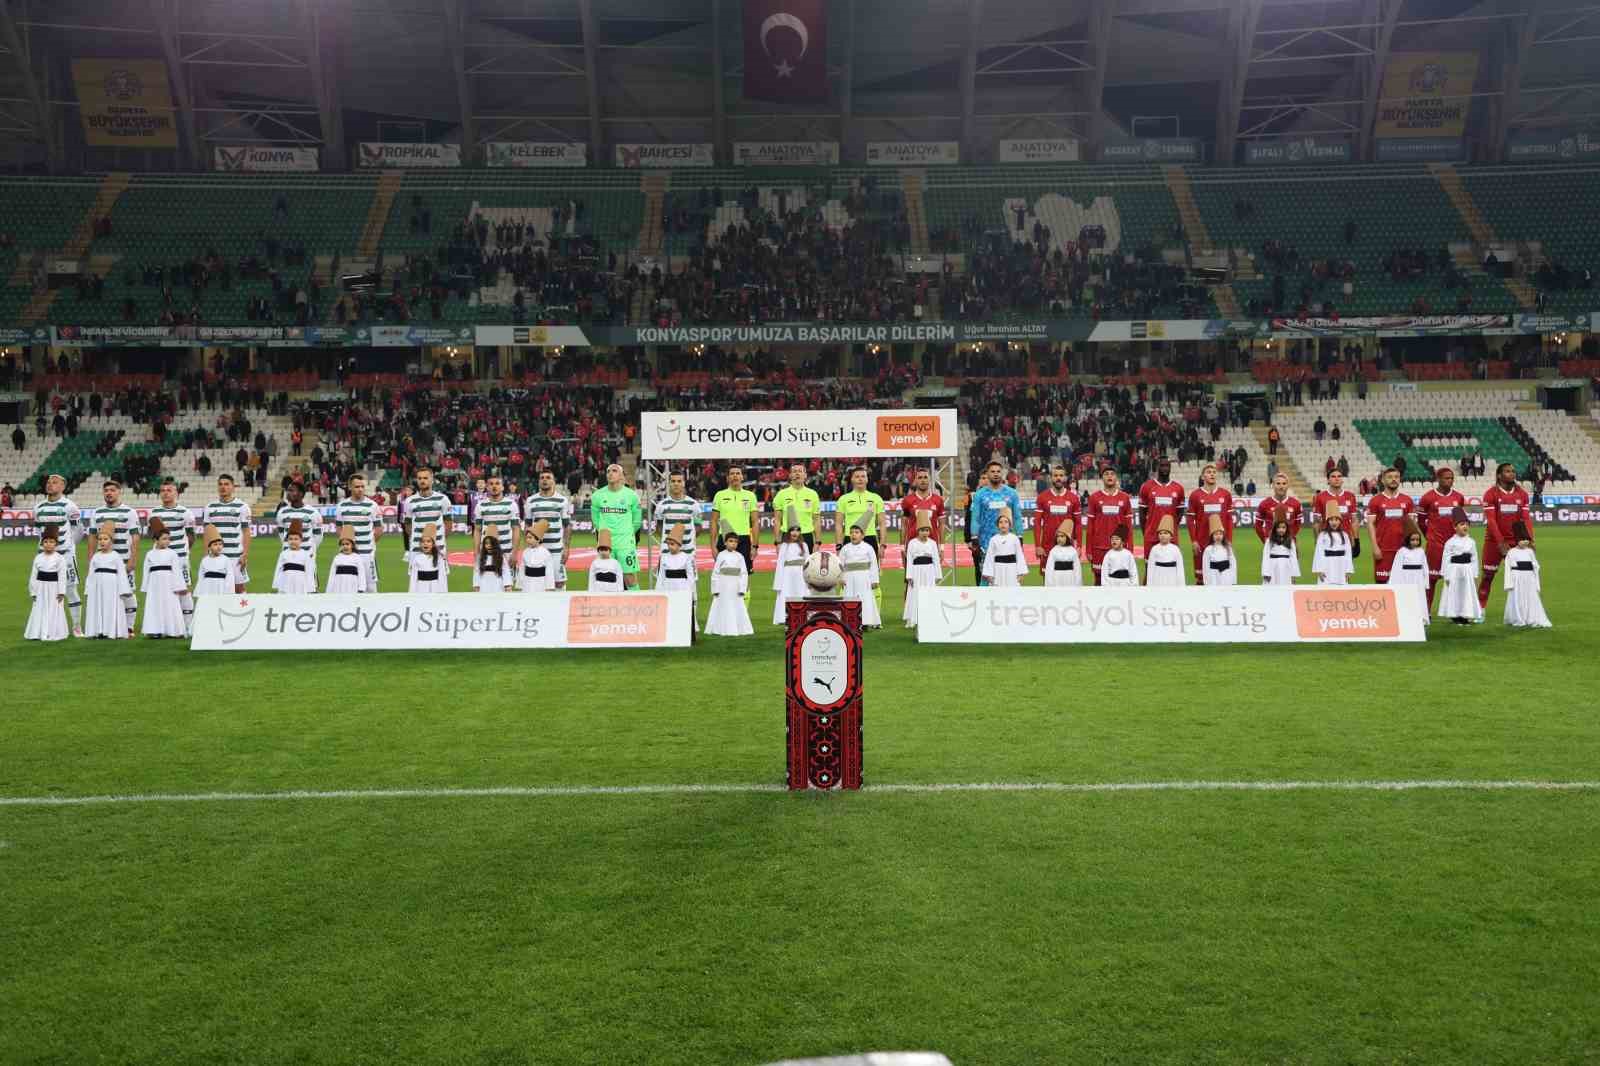 Trendyol Süper Lig: Konyaspor: 0 - Sivasspor: 1 (İlk yarı)